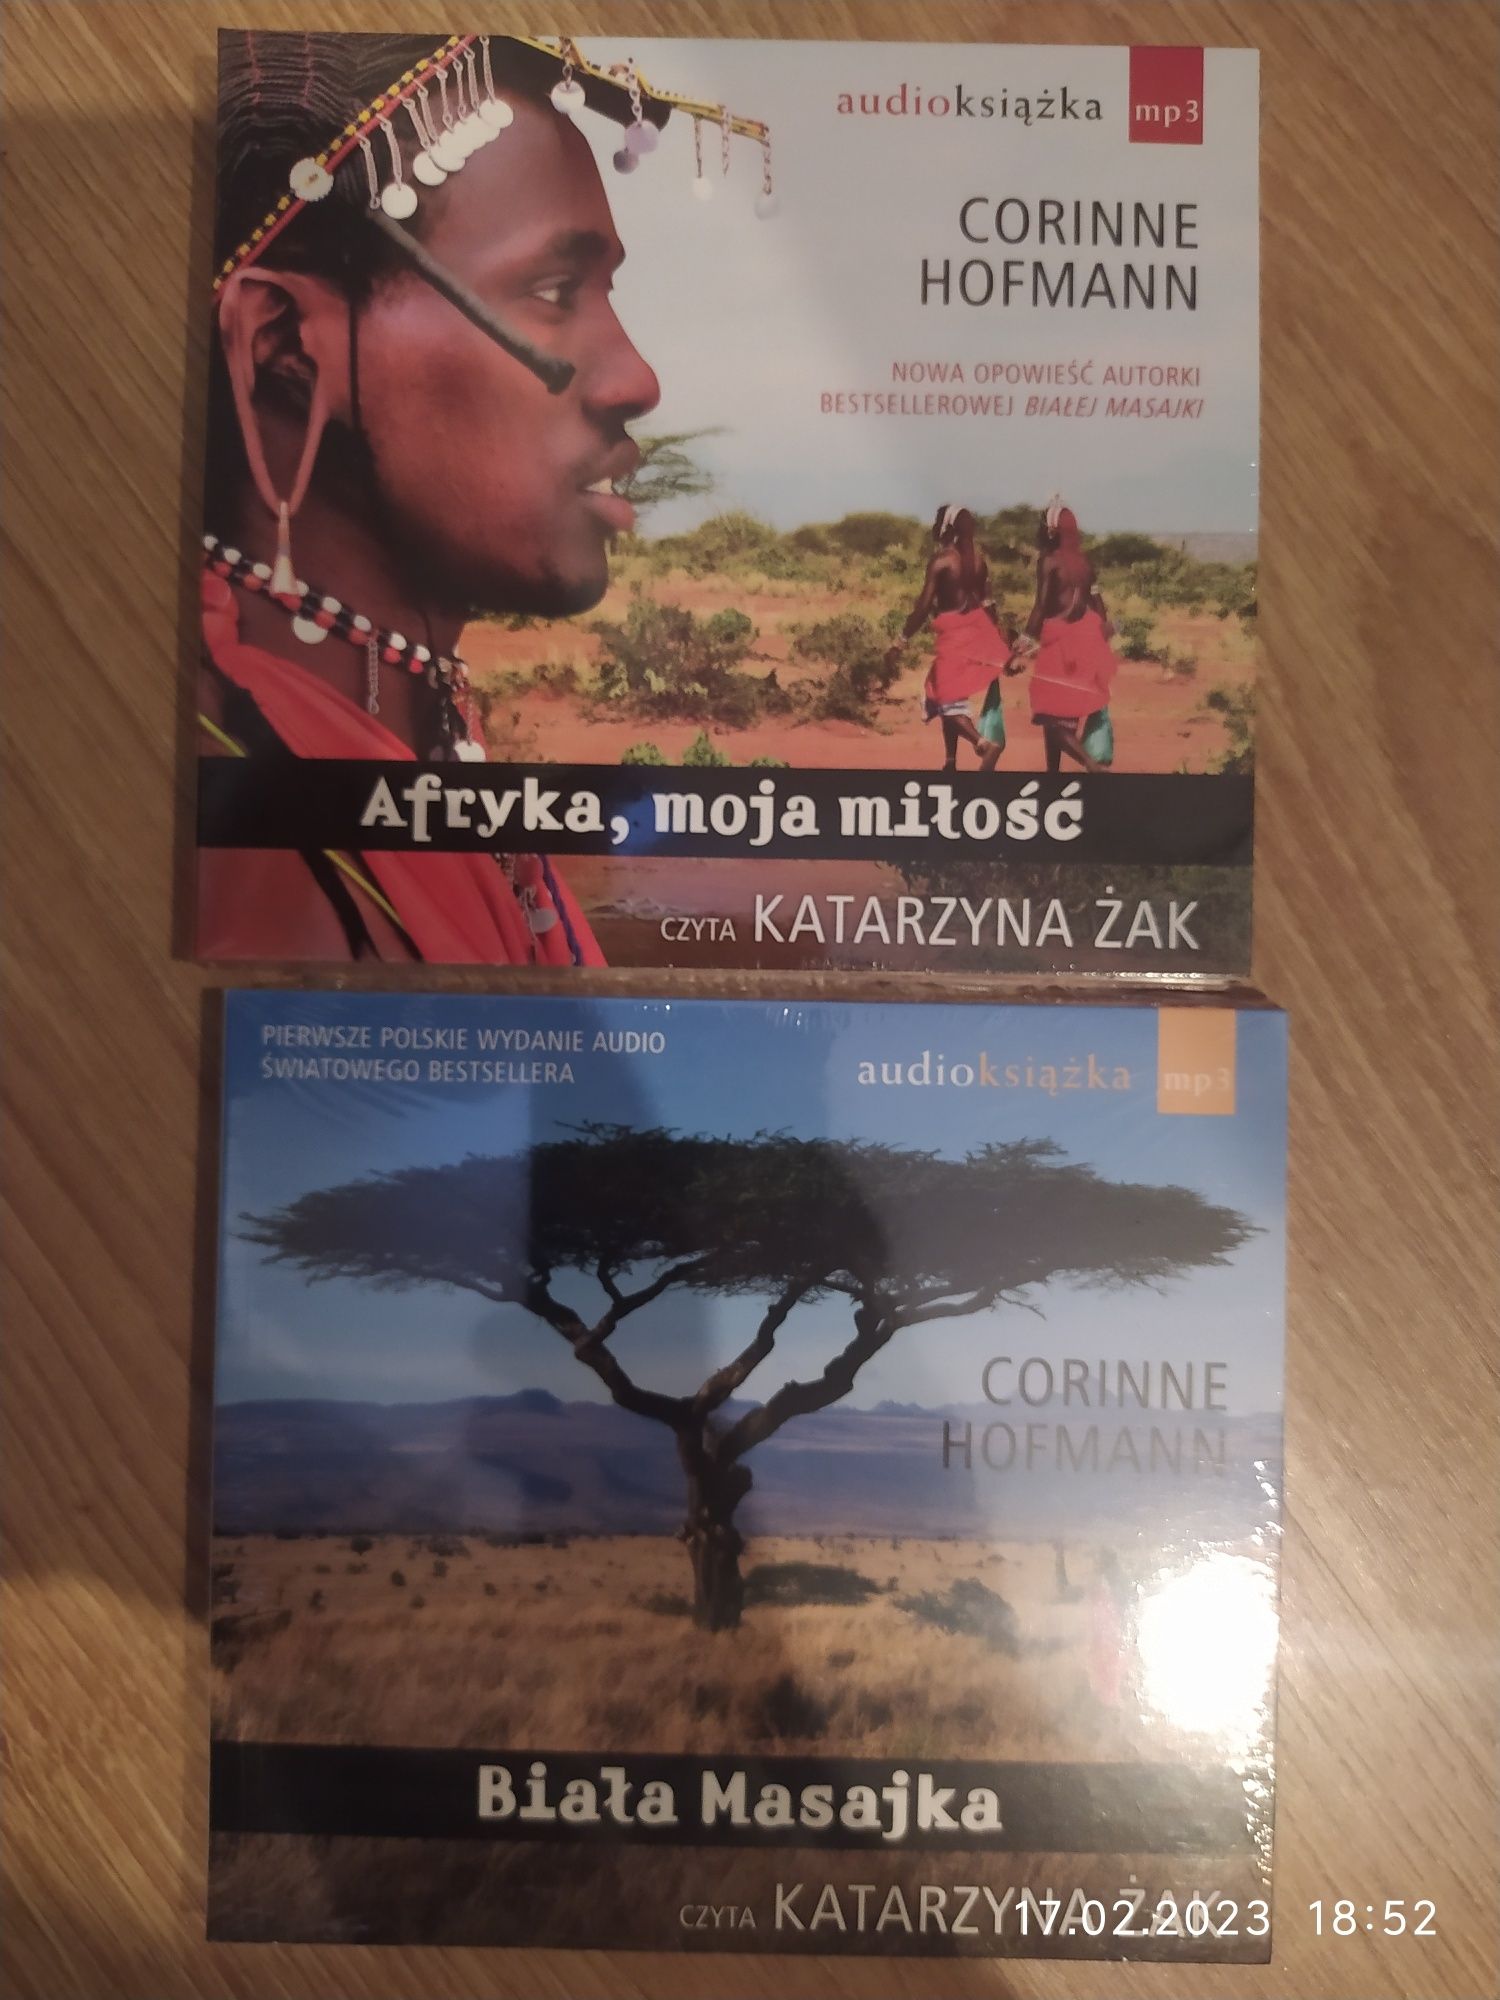 Biała Masajka, Afryka, moja miłość audio książka mp3